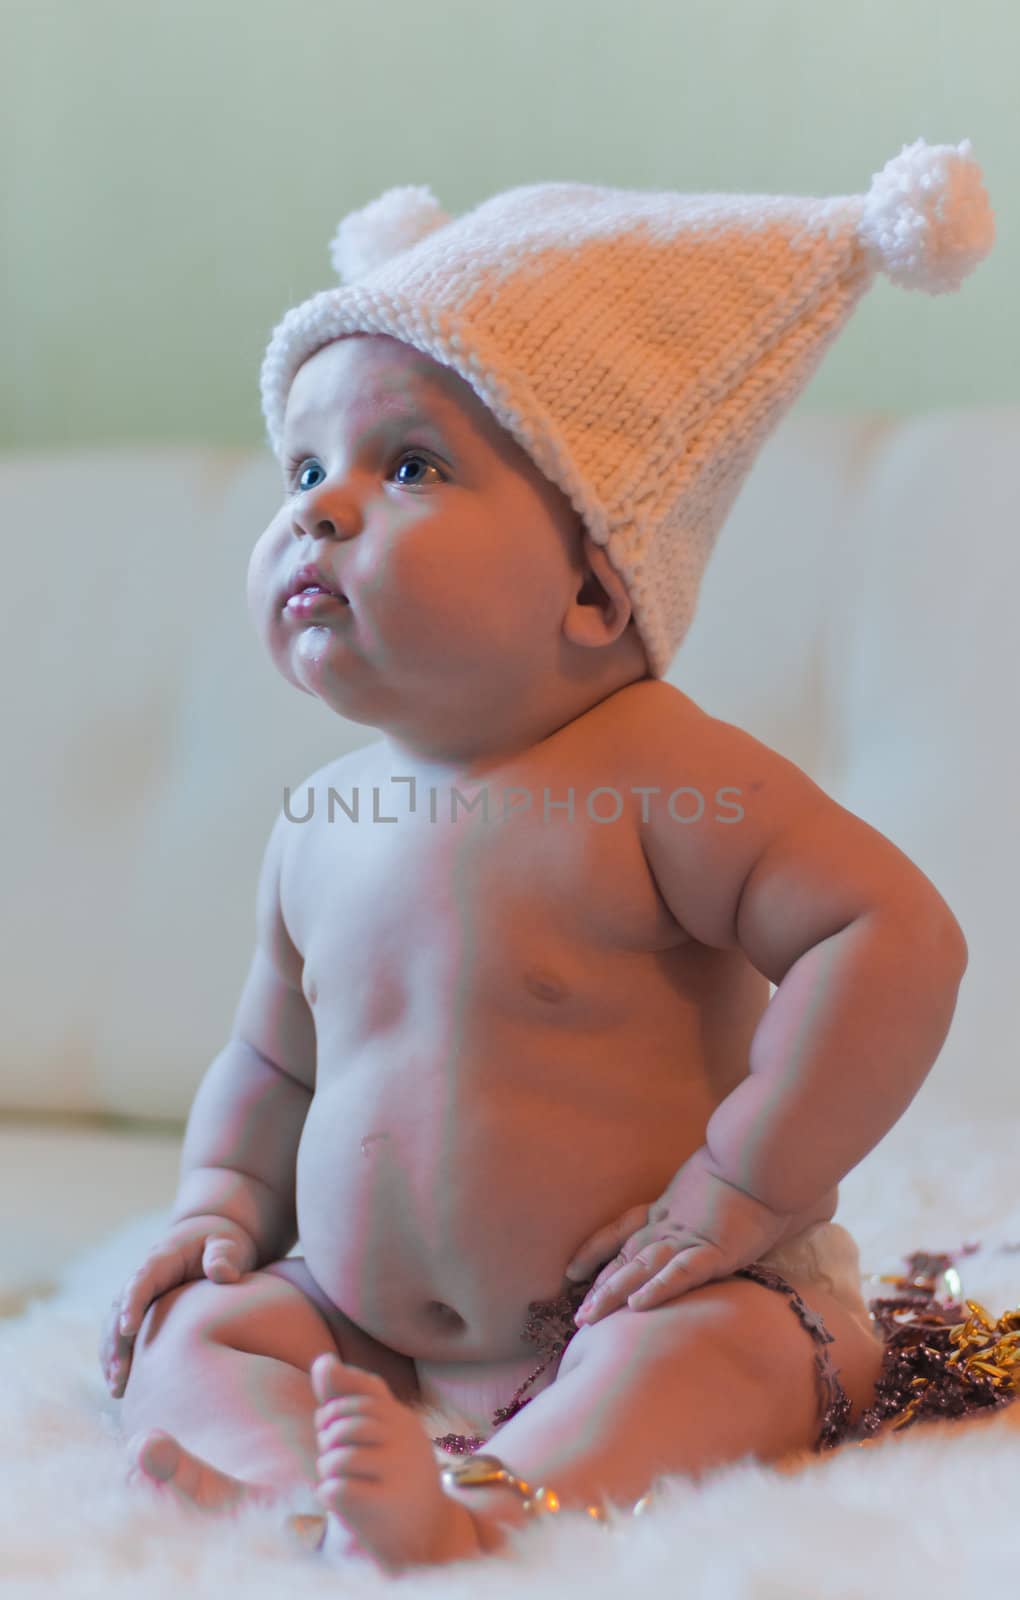 Portrait of baby in hat looking left